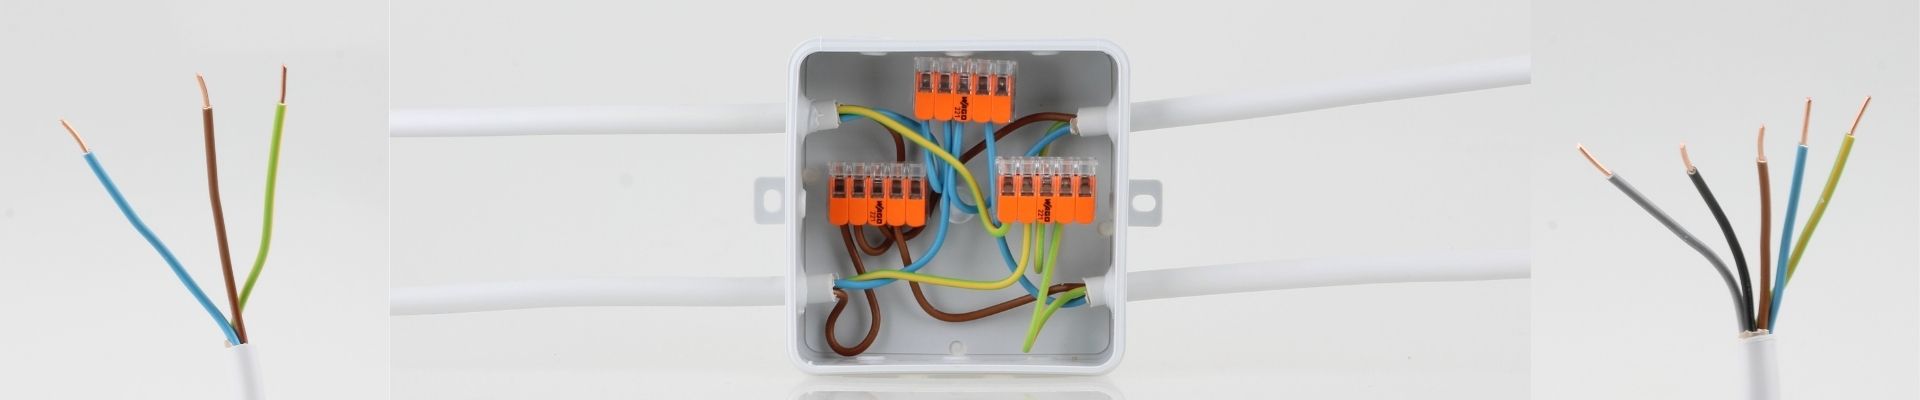 NYM-J Mantelleitung Stromkabel Elektrokabel